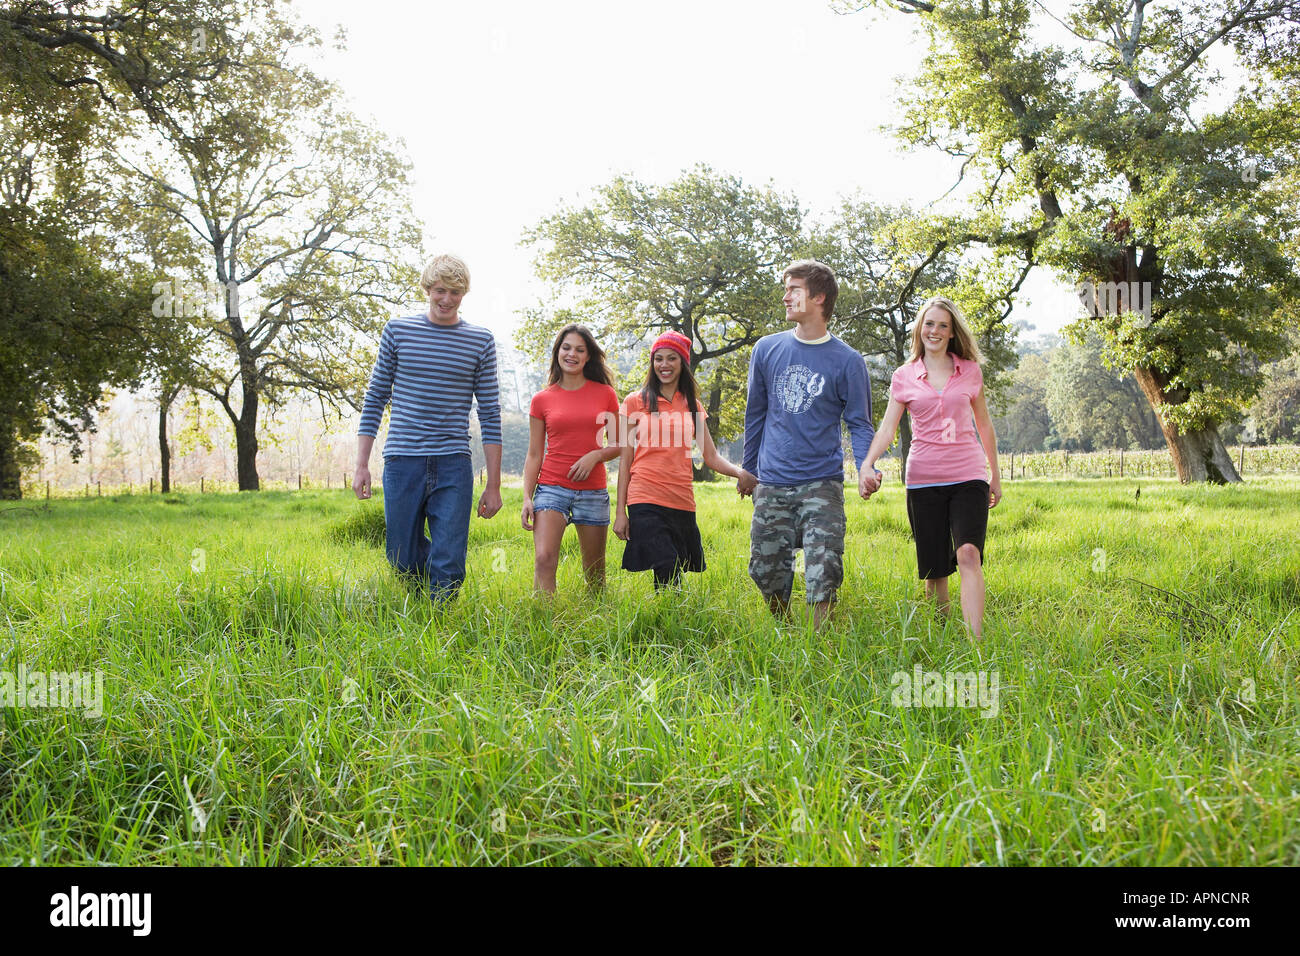 Five teenagers walking in field Stock Photo